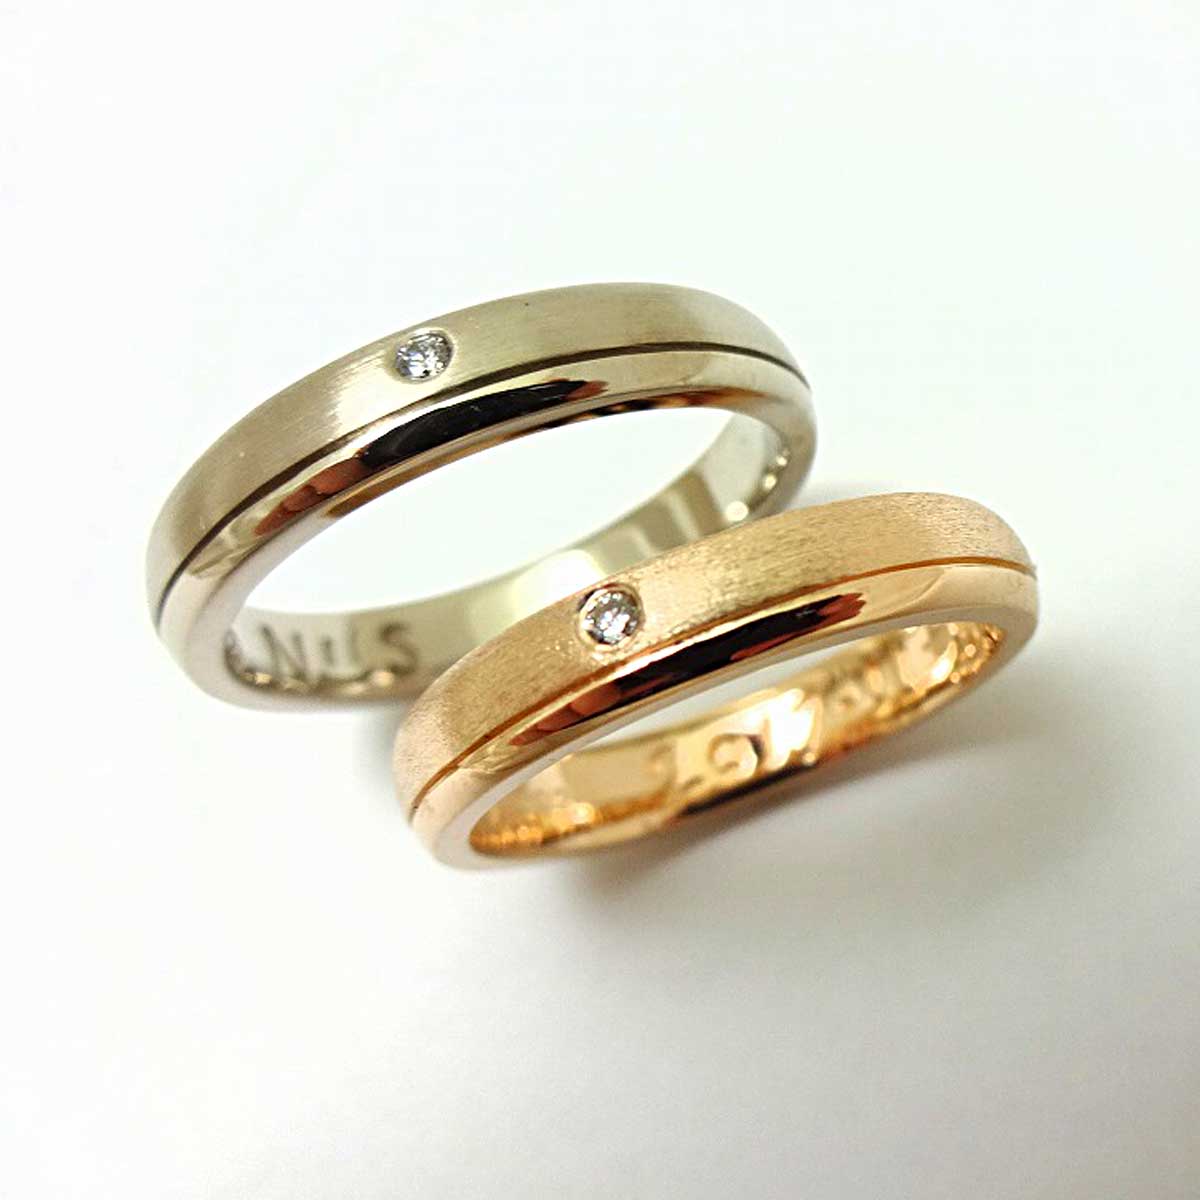 甲丸ラインの結婚指輪 | 手作り指輪のアトリエ100&1